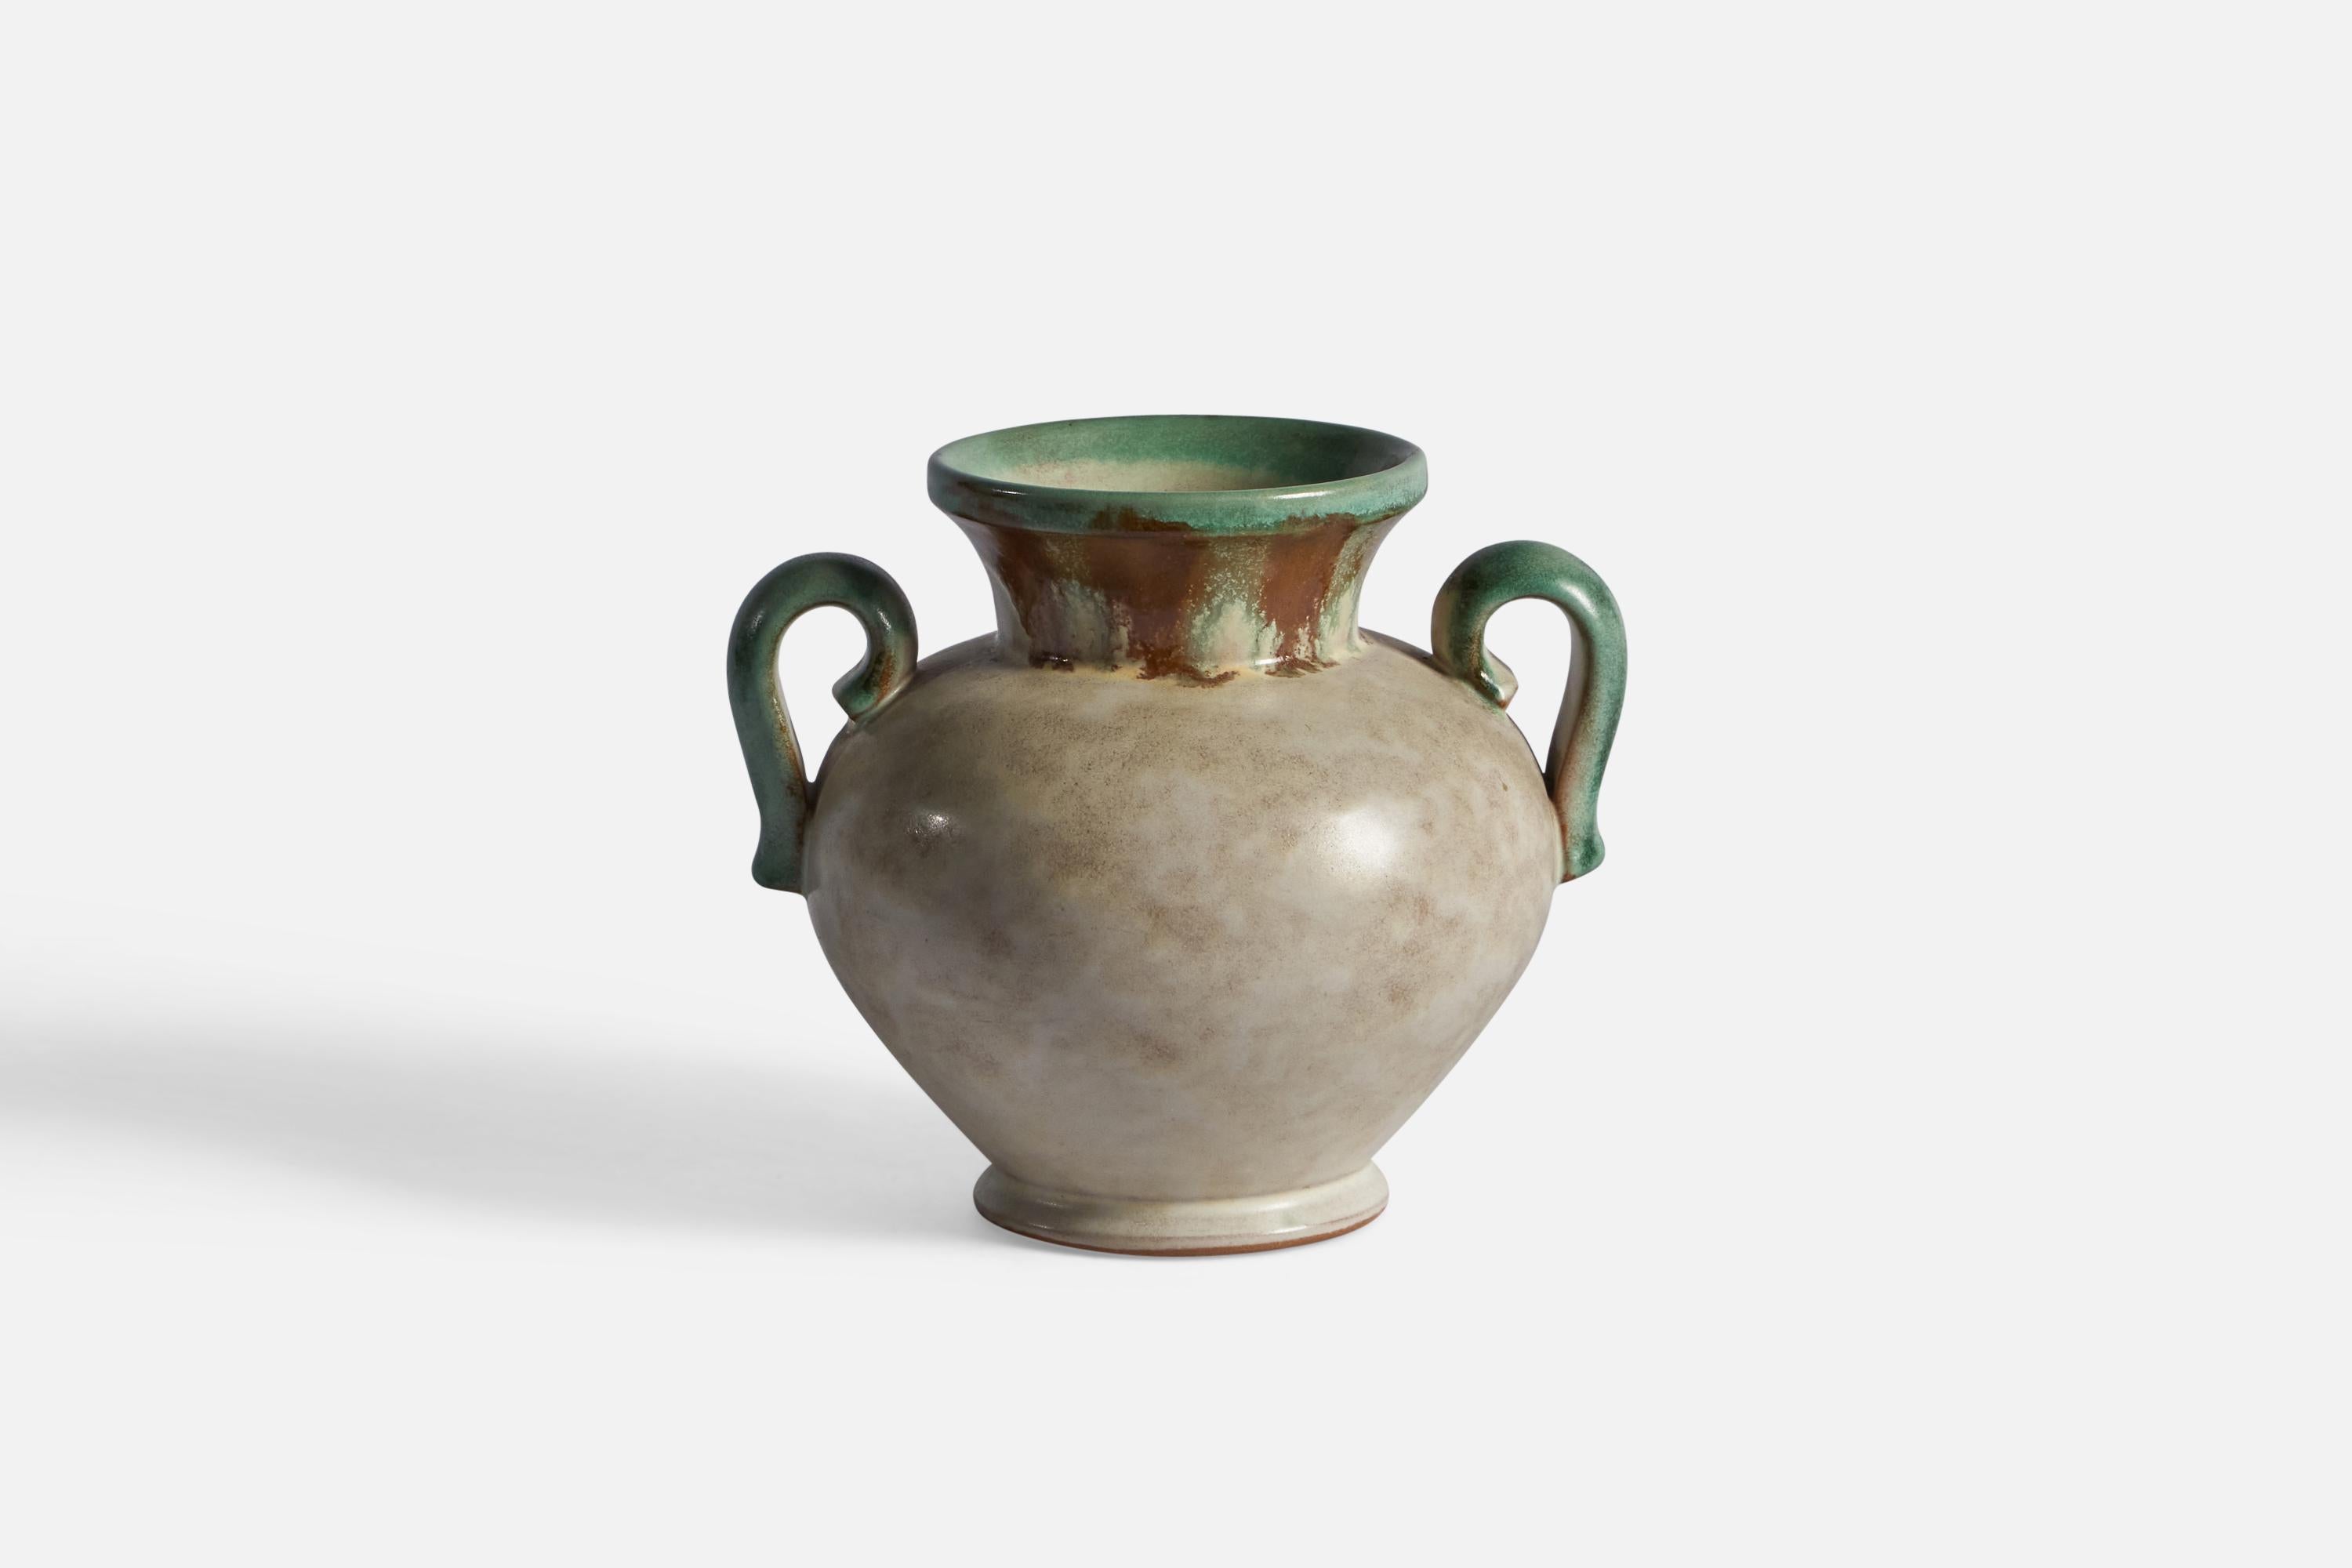 Vase en faïence verte et grise, conçu et produit par Töreboda Keramik, Suède, vers les années 1940.